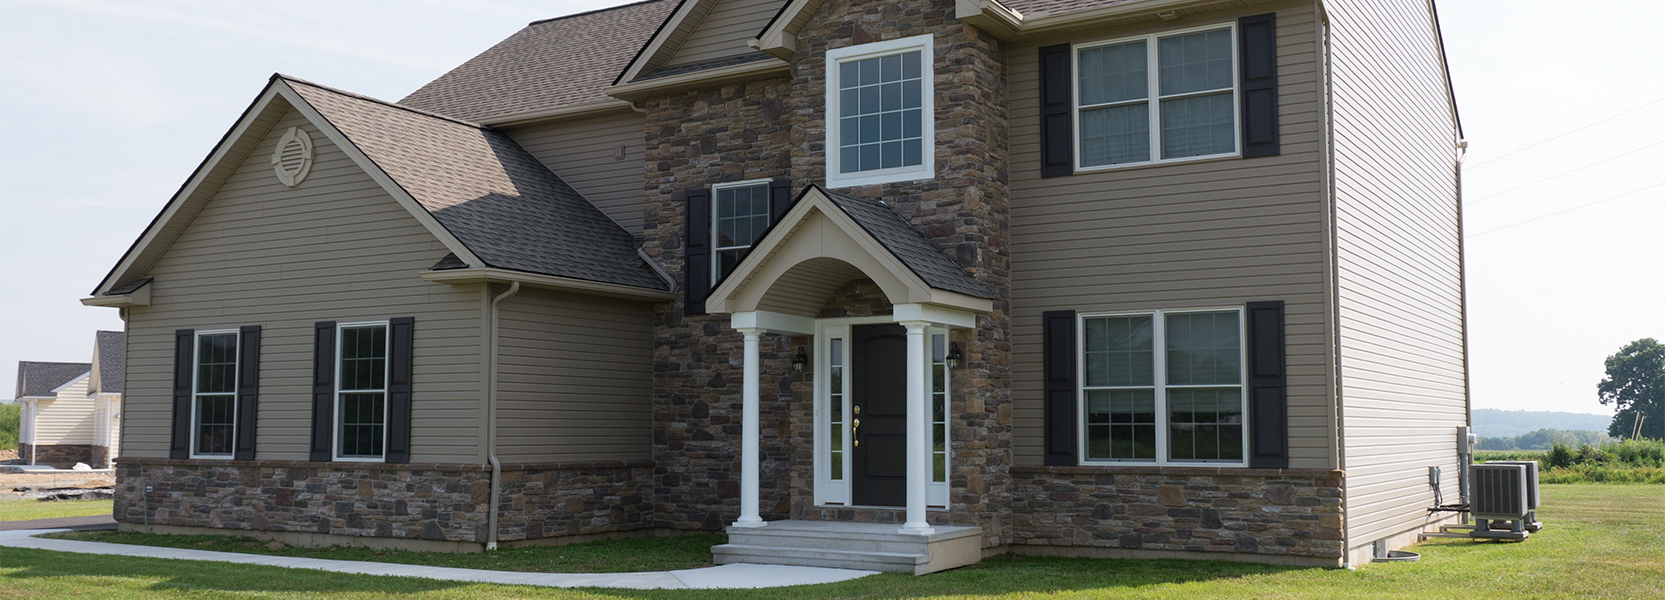 R & K Custom Homes Builders of the Lehigh Valley - Energy-Efficient Custom Diehl Model Home